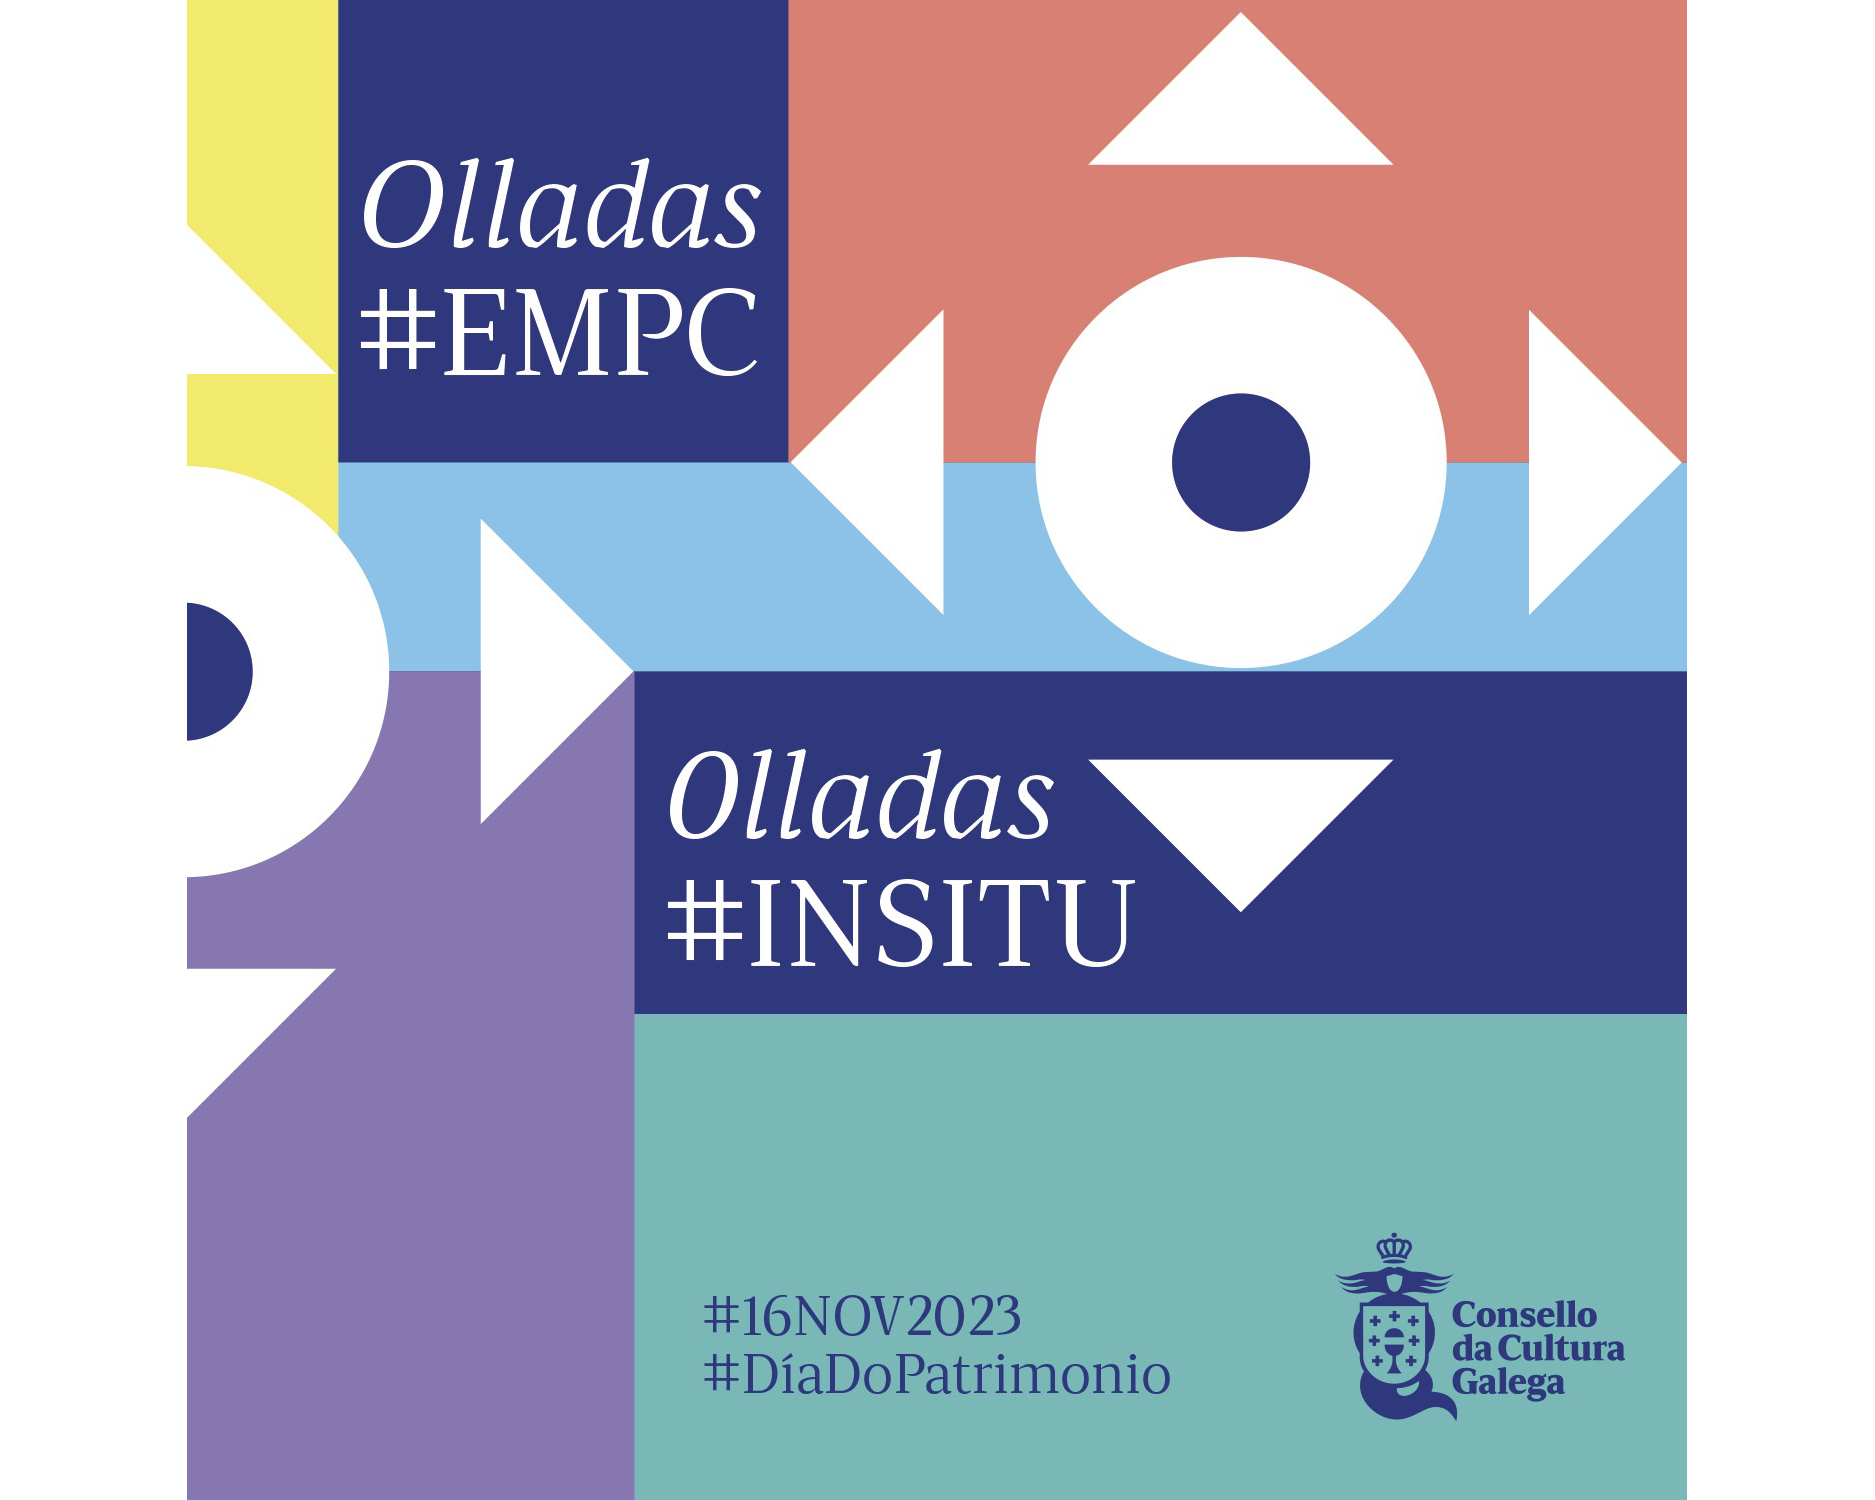 Inauguração da exposicição Olladas #EMPC Olladas #INSITU image